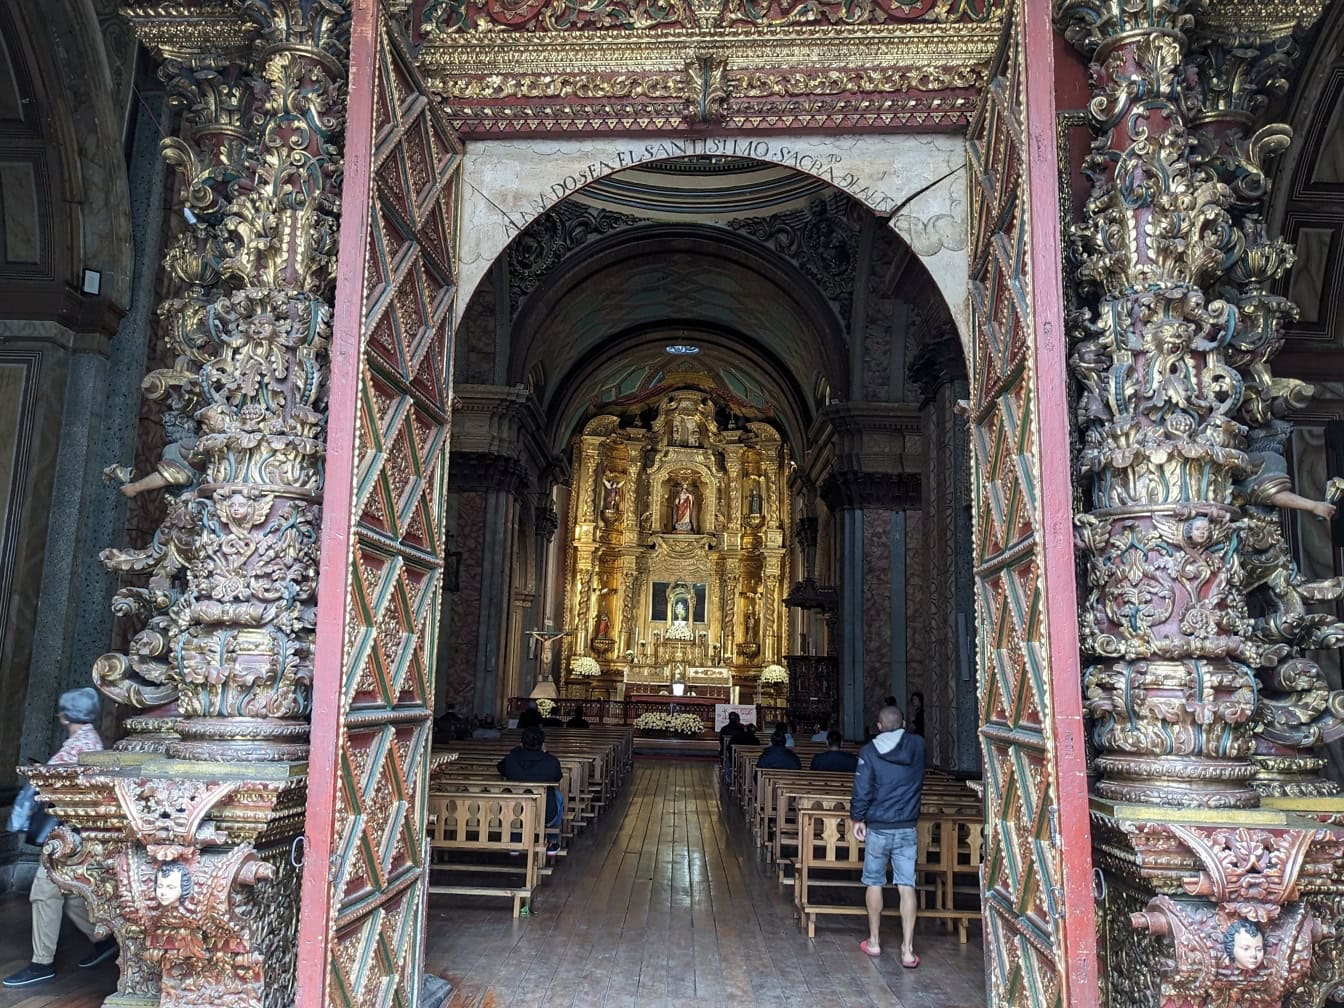 Pintu masuk ke gereja Tabernakel, sebuah gereja Katolik renaisans di kota Quito di Ekuador